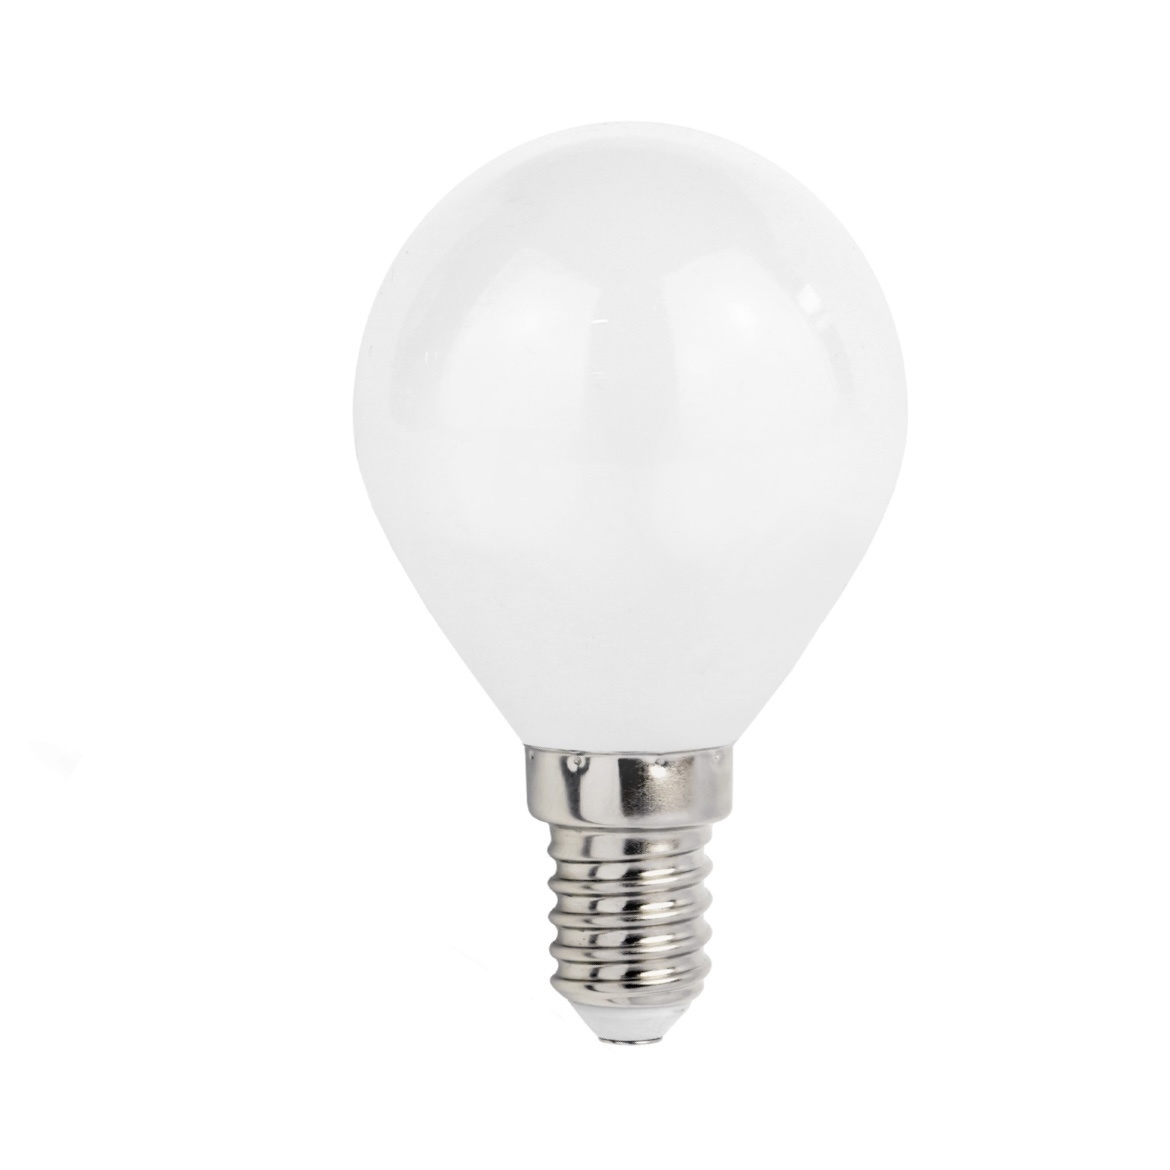 nyse Bytte investering LED pære - E14 fatning - 6W erstatter 50W - 3000k varmt hvidt lys -  Ledpaneler.dk